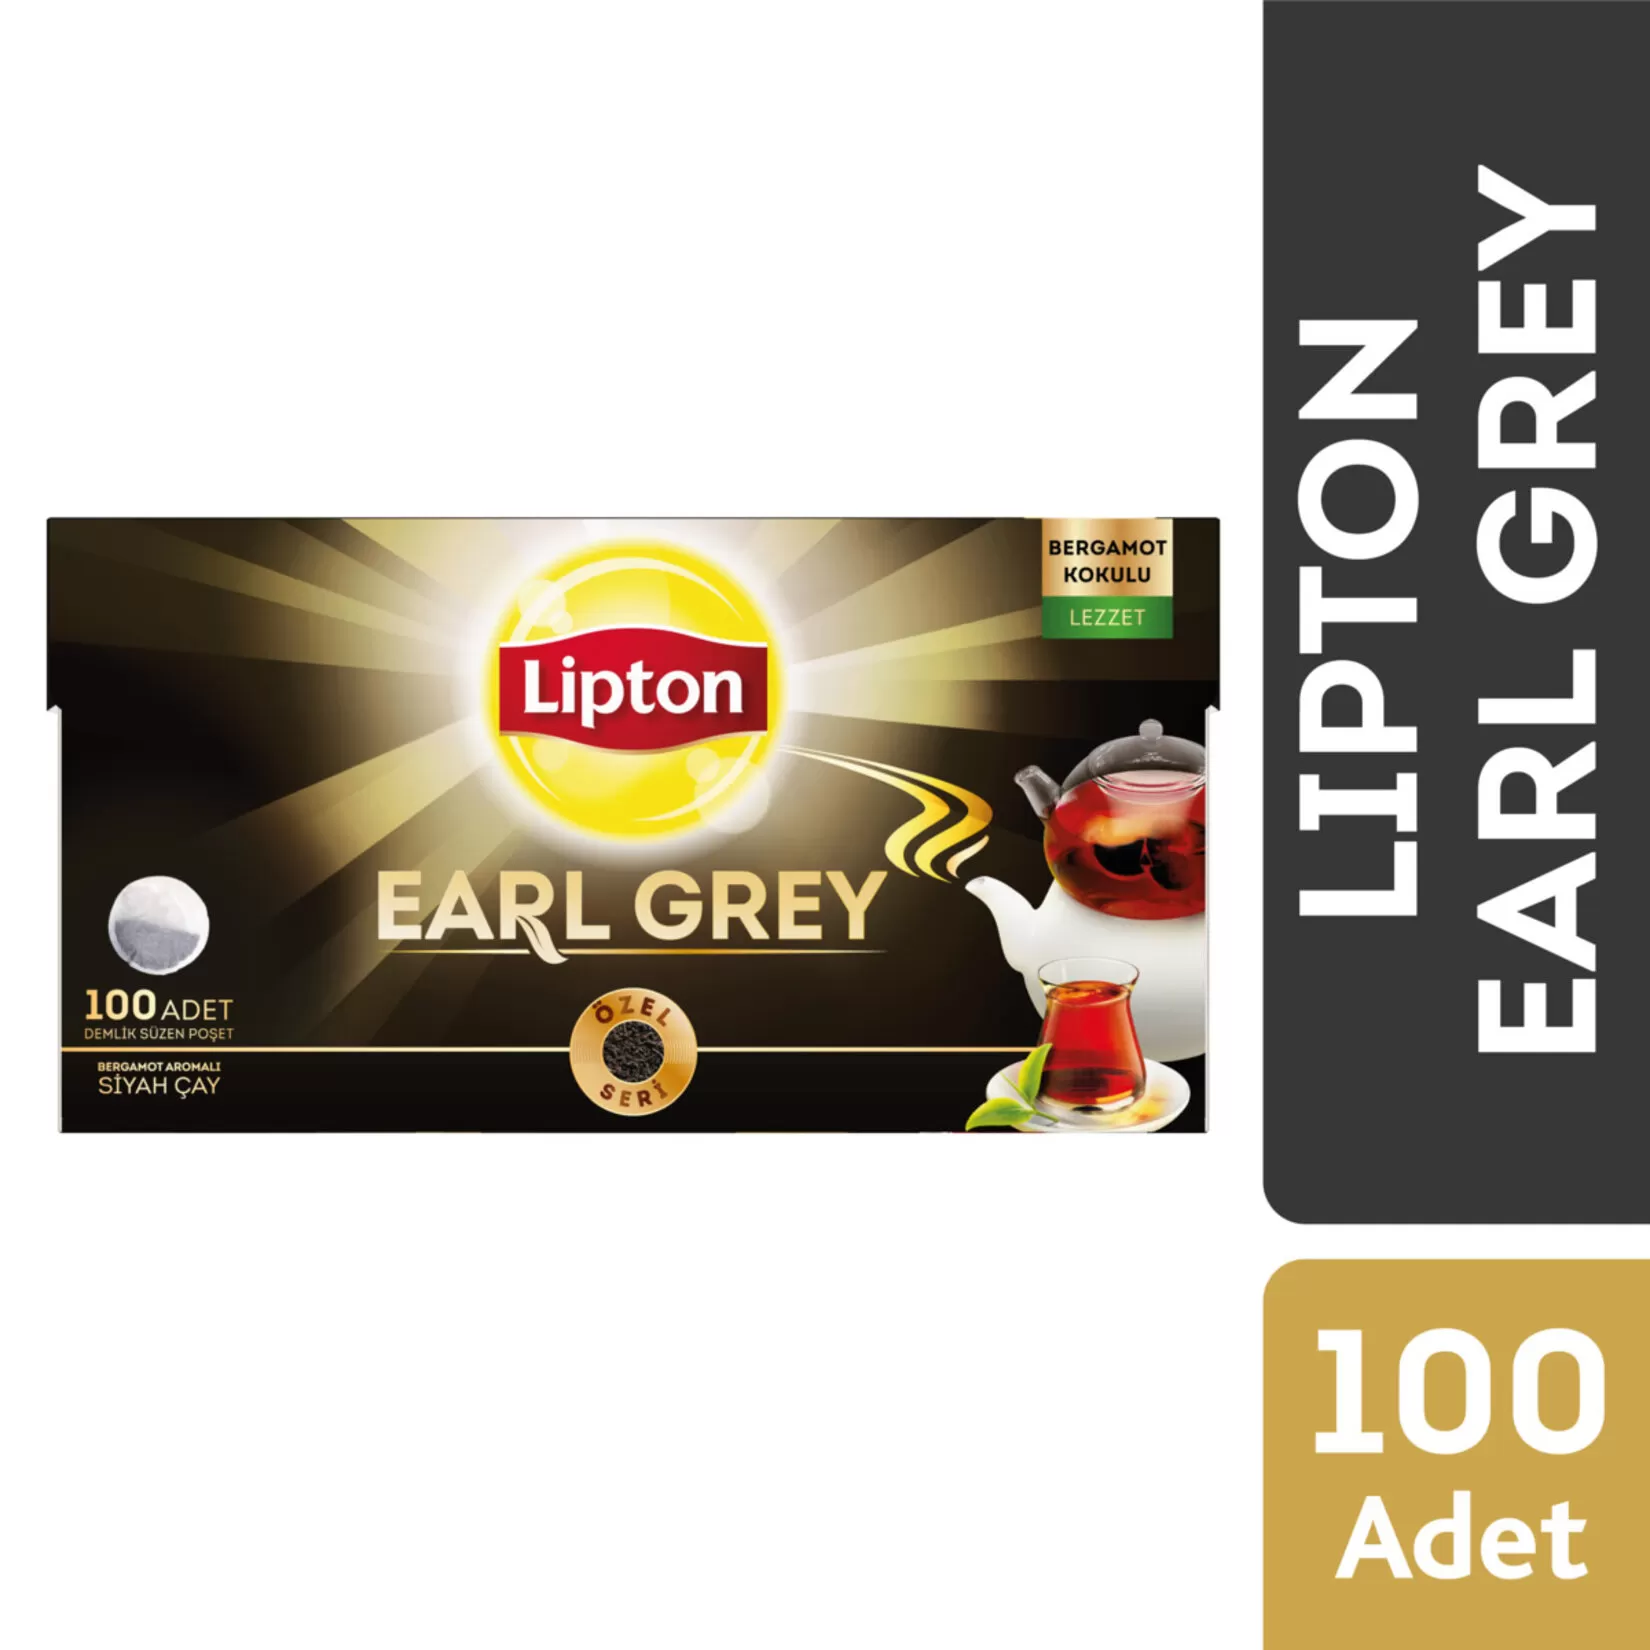 Lipton Earl Grey Bergamot Aromalı Demlik Poşet Çay 100'lü 2 Paket